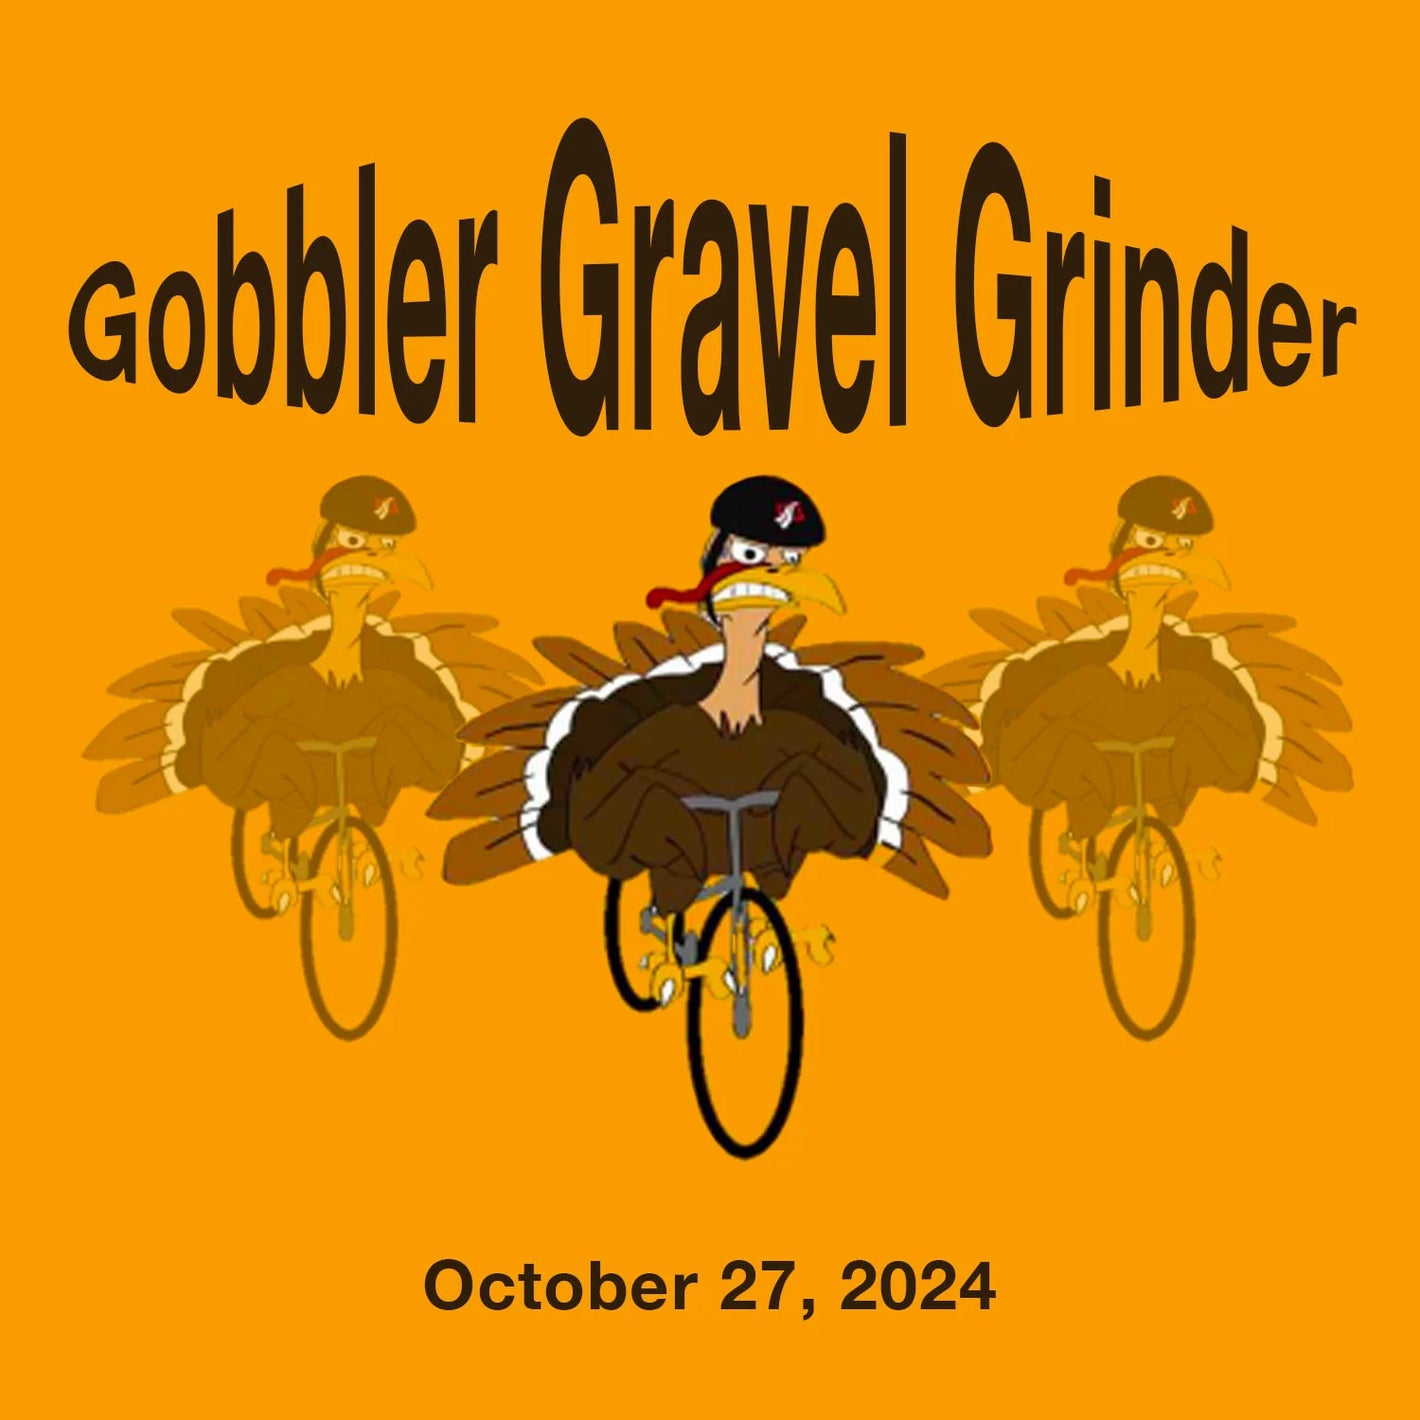 Gobbler Gravel Grinder October 27, 2024, Bigwheelevents.org / bixbybicycles.com